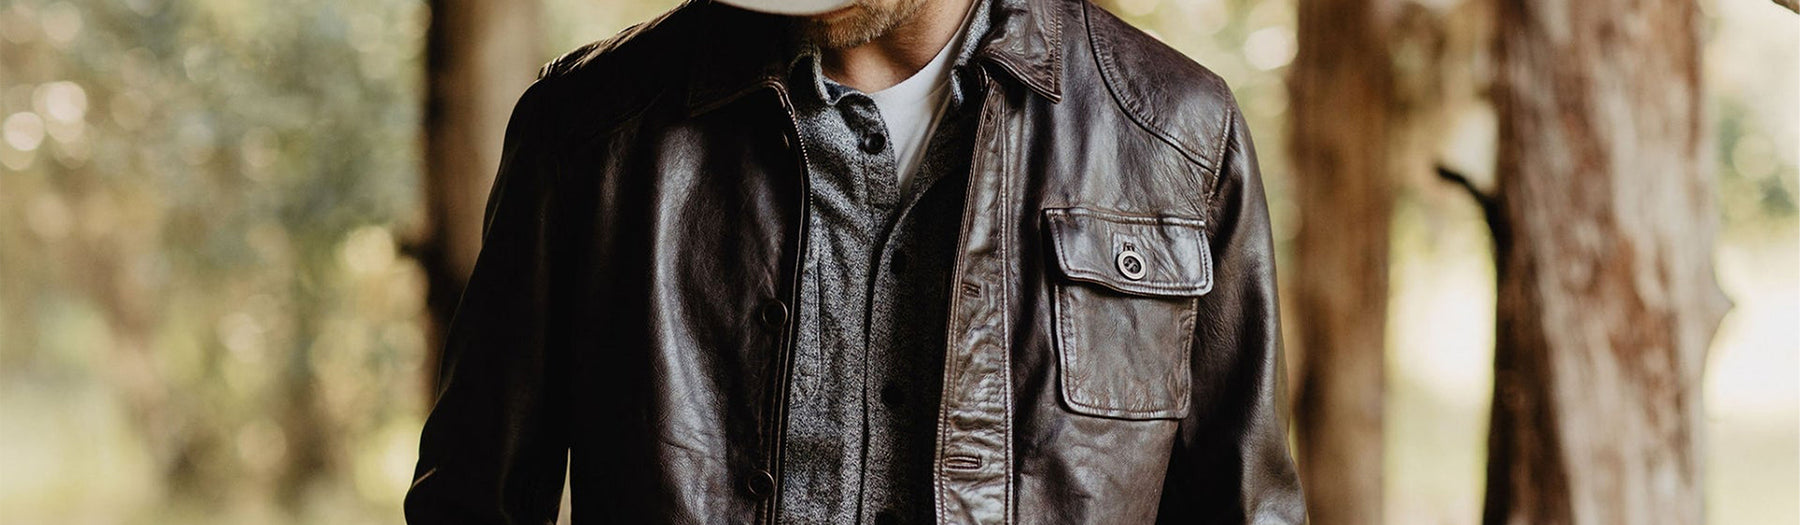 Dark Brown Leather Jackets